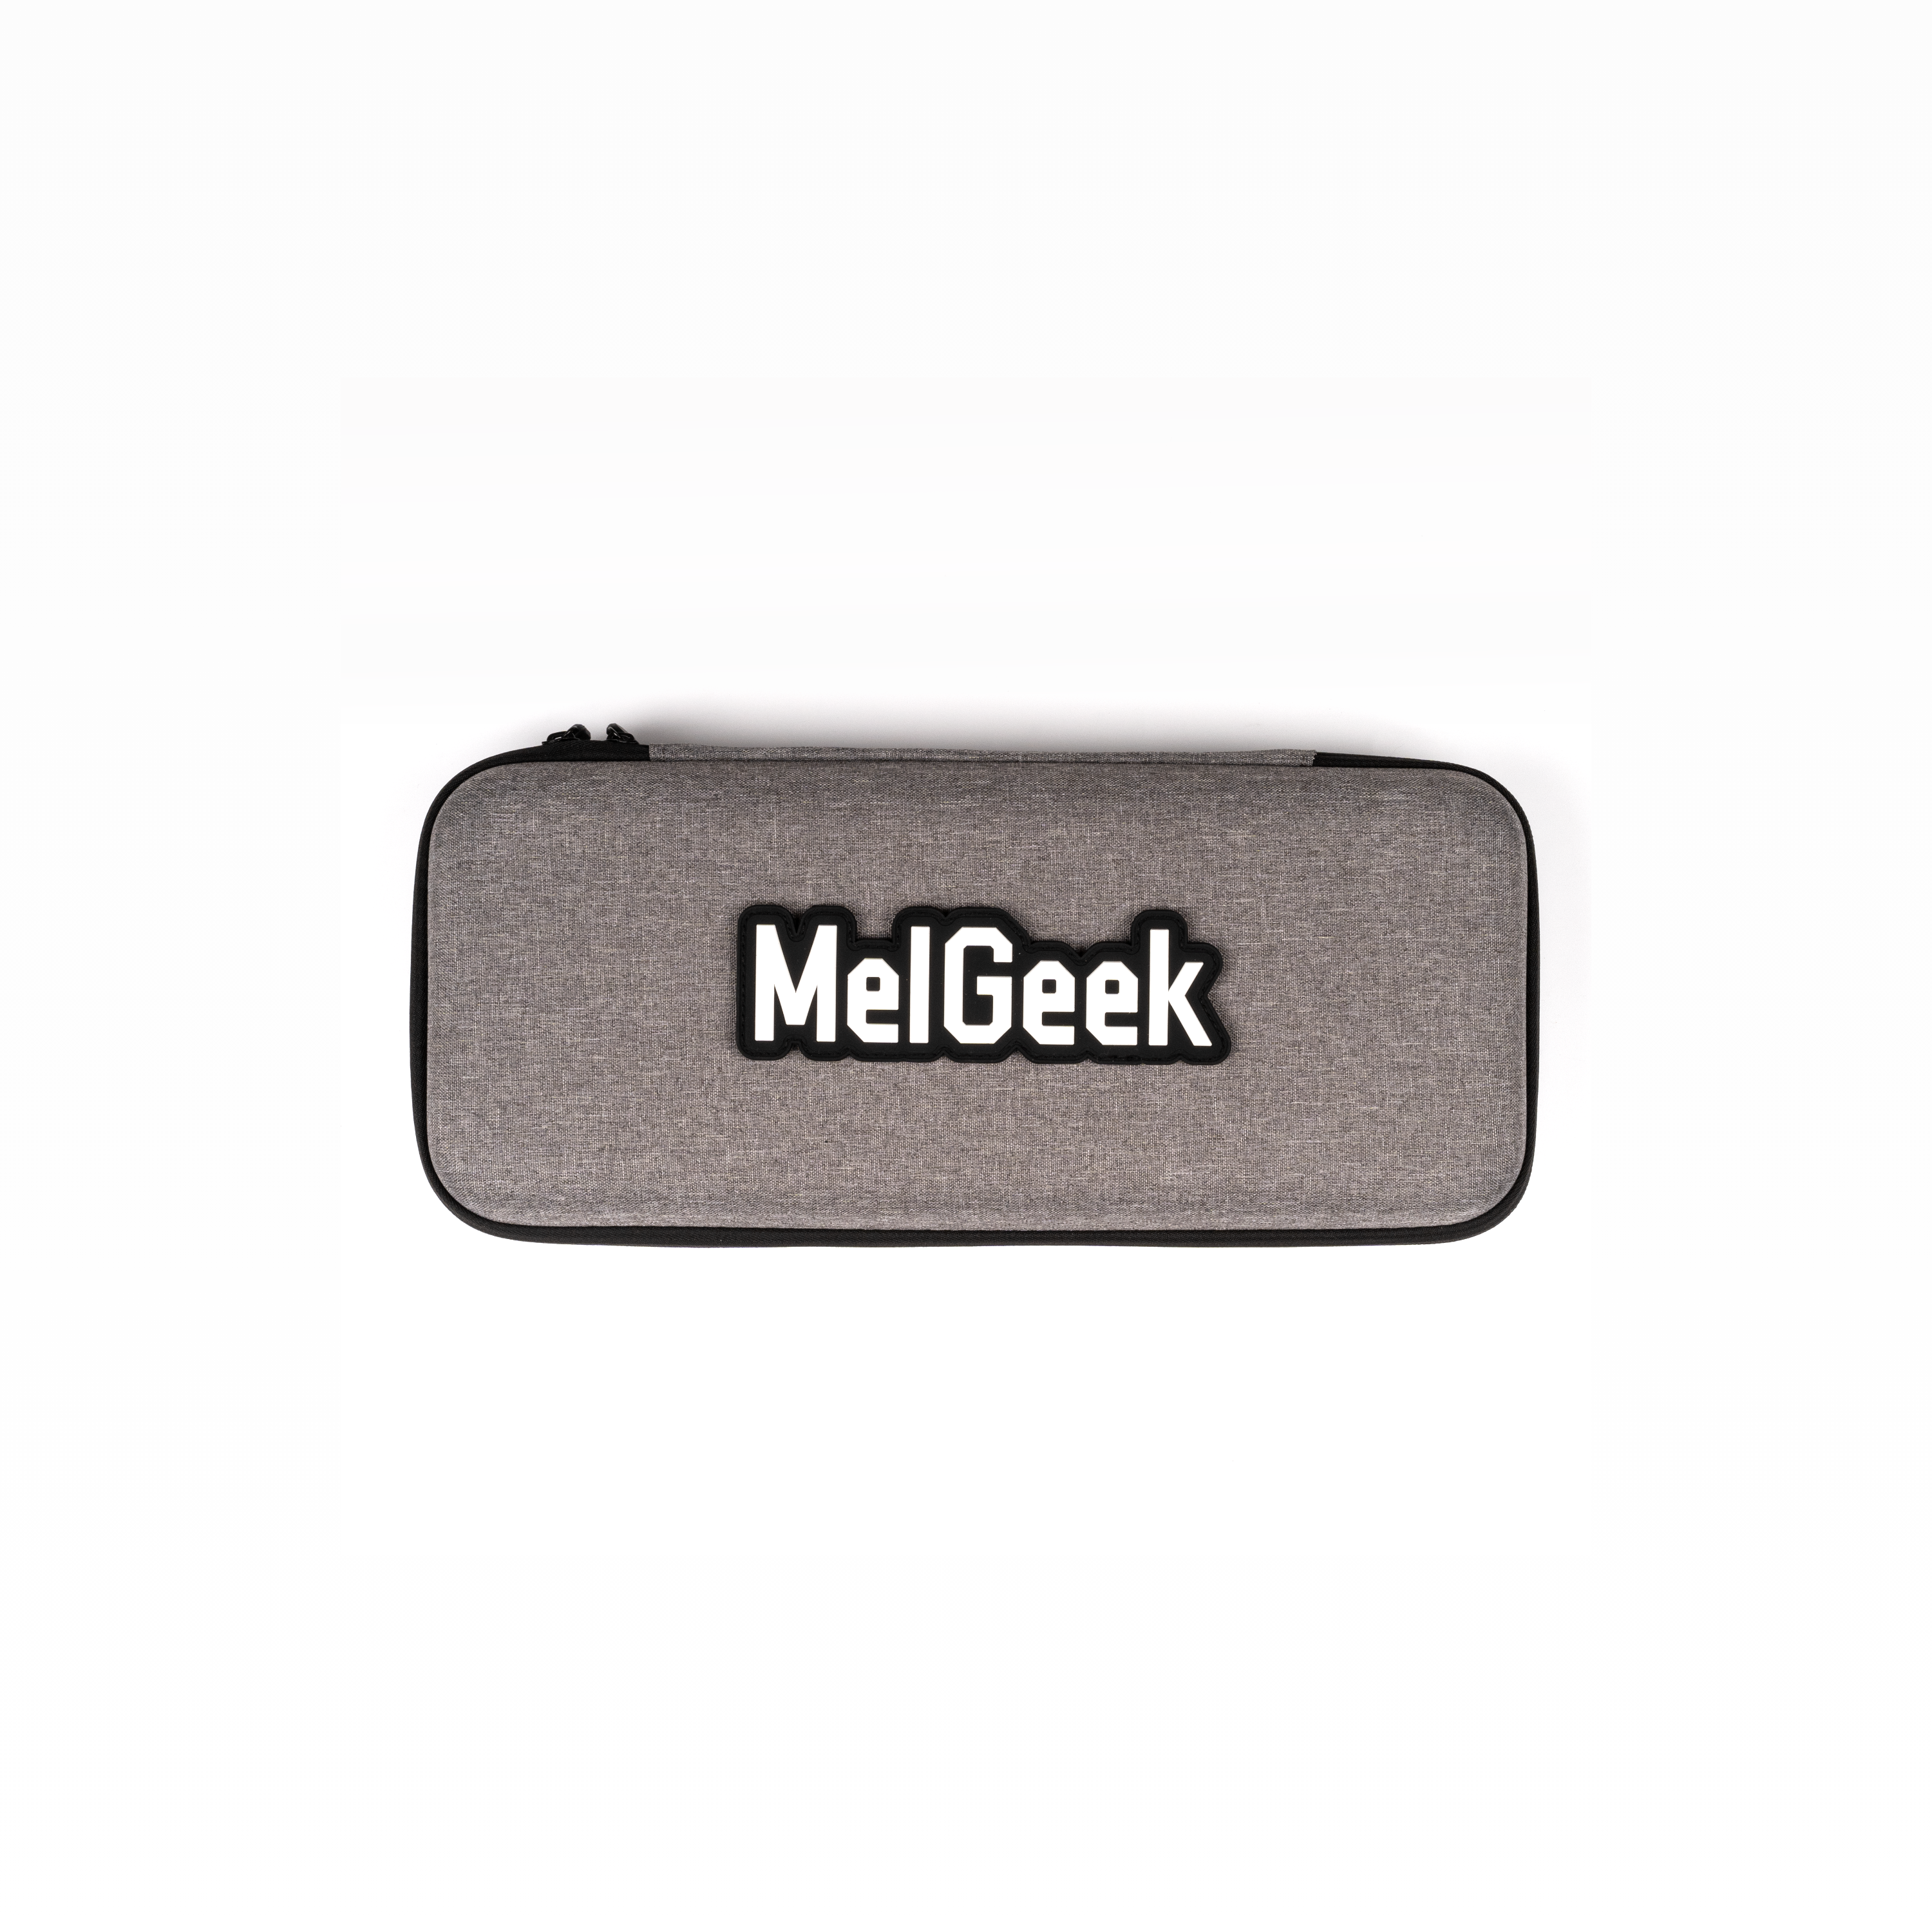 MelGeek メカニカル キーボード ストレージ キャリング ケース バッグ Mojo 60/65/68 キーボード用